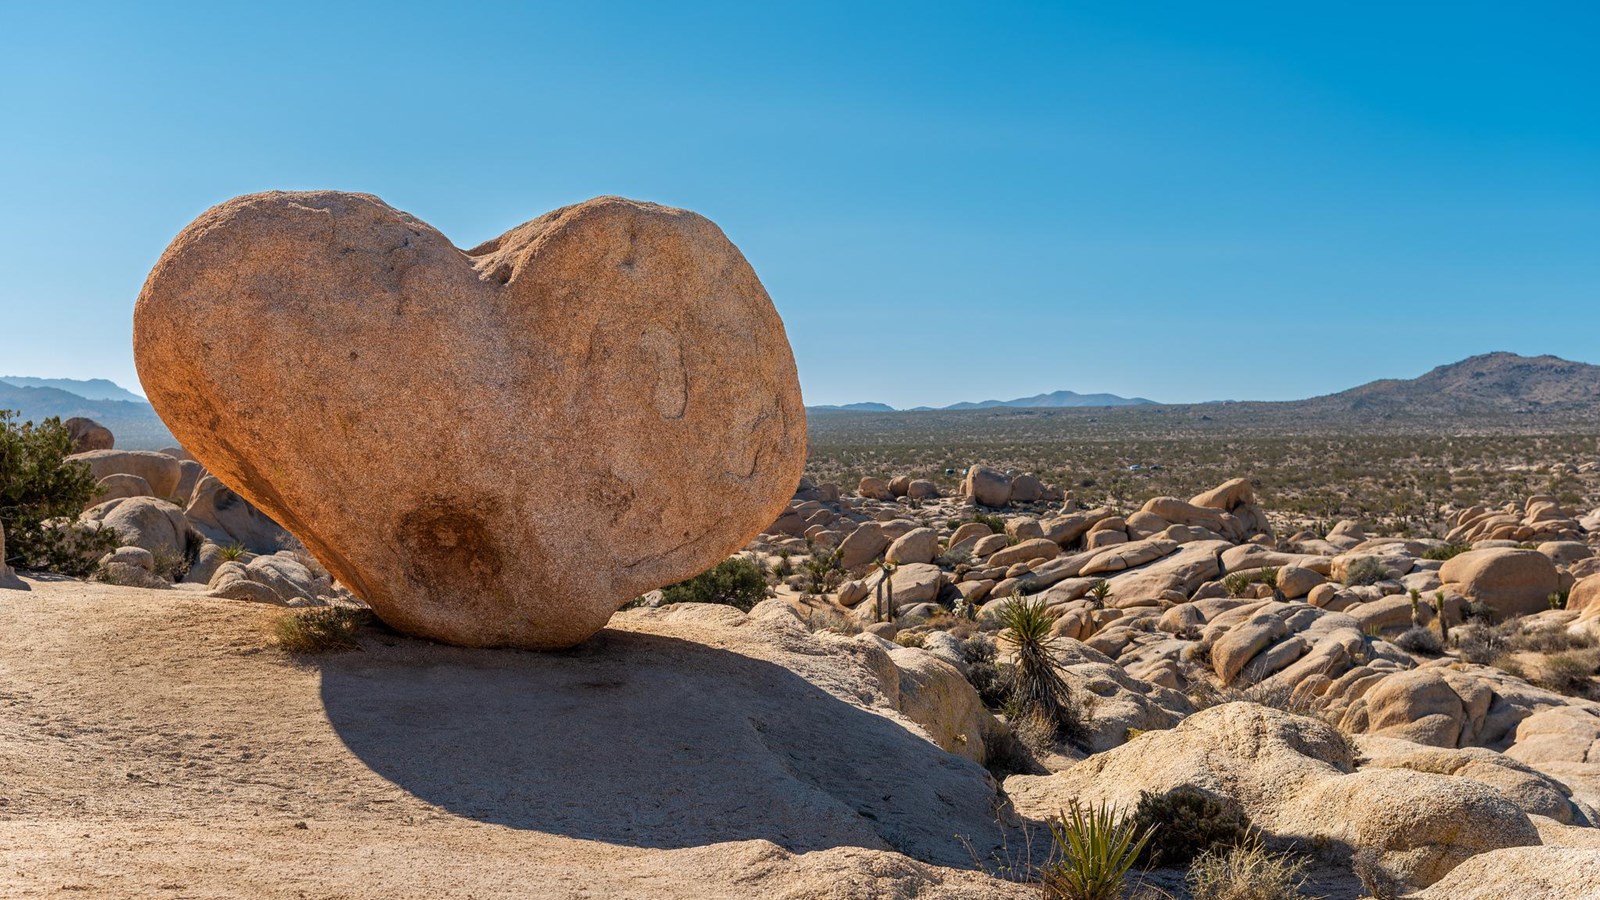 Large heart shaped boulder in front of rocky landscape